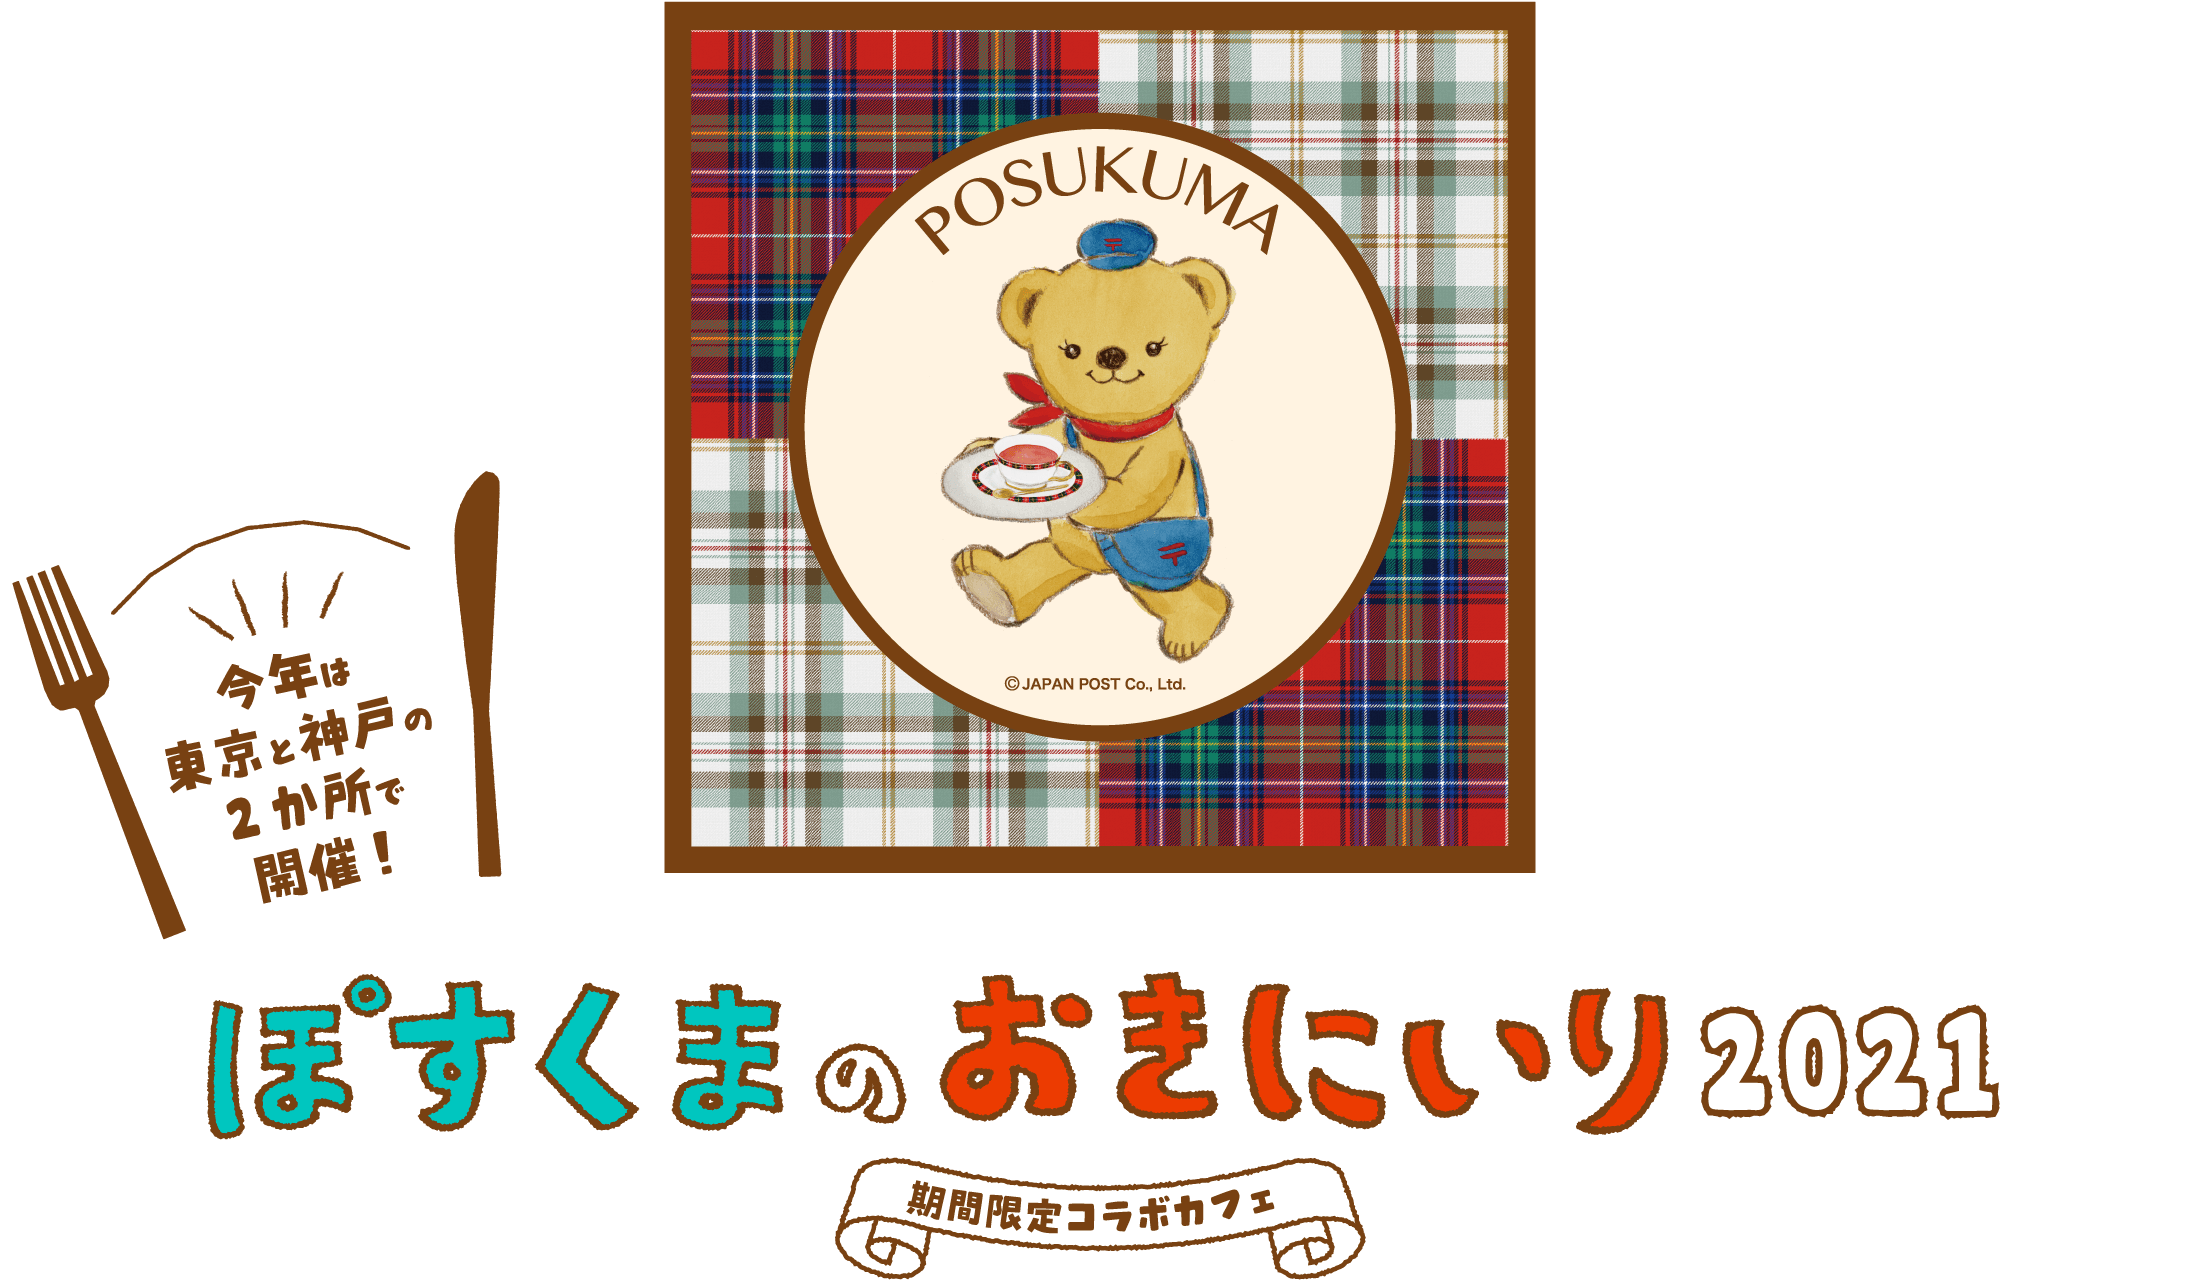 ぽすくまのお気に入り2021 期間限定コラボカフェ 今年は東京と神戸の２か所で開催！